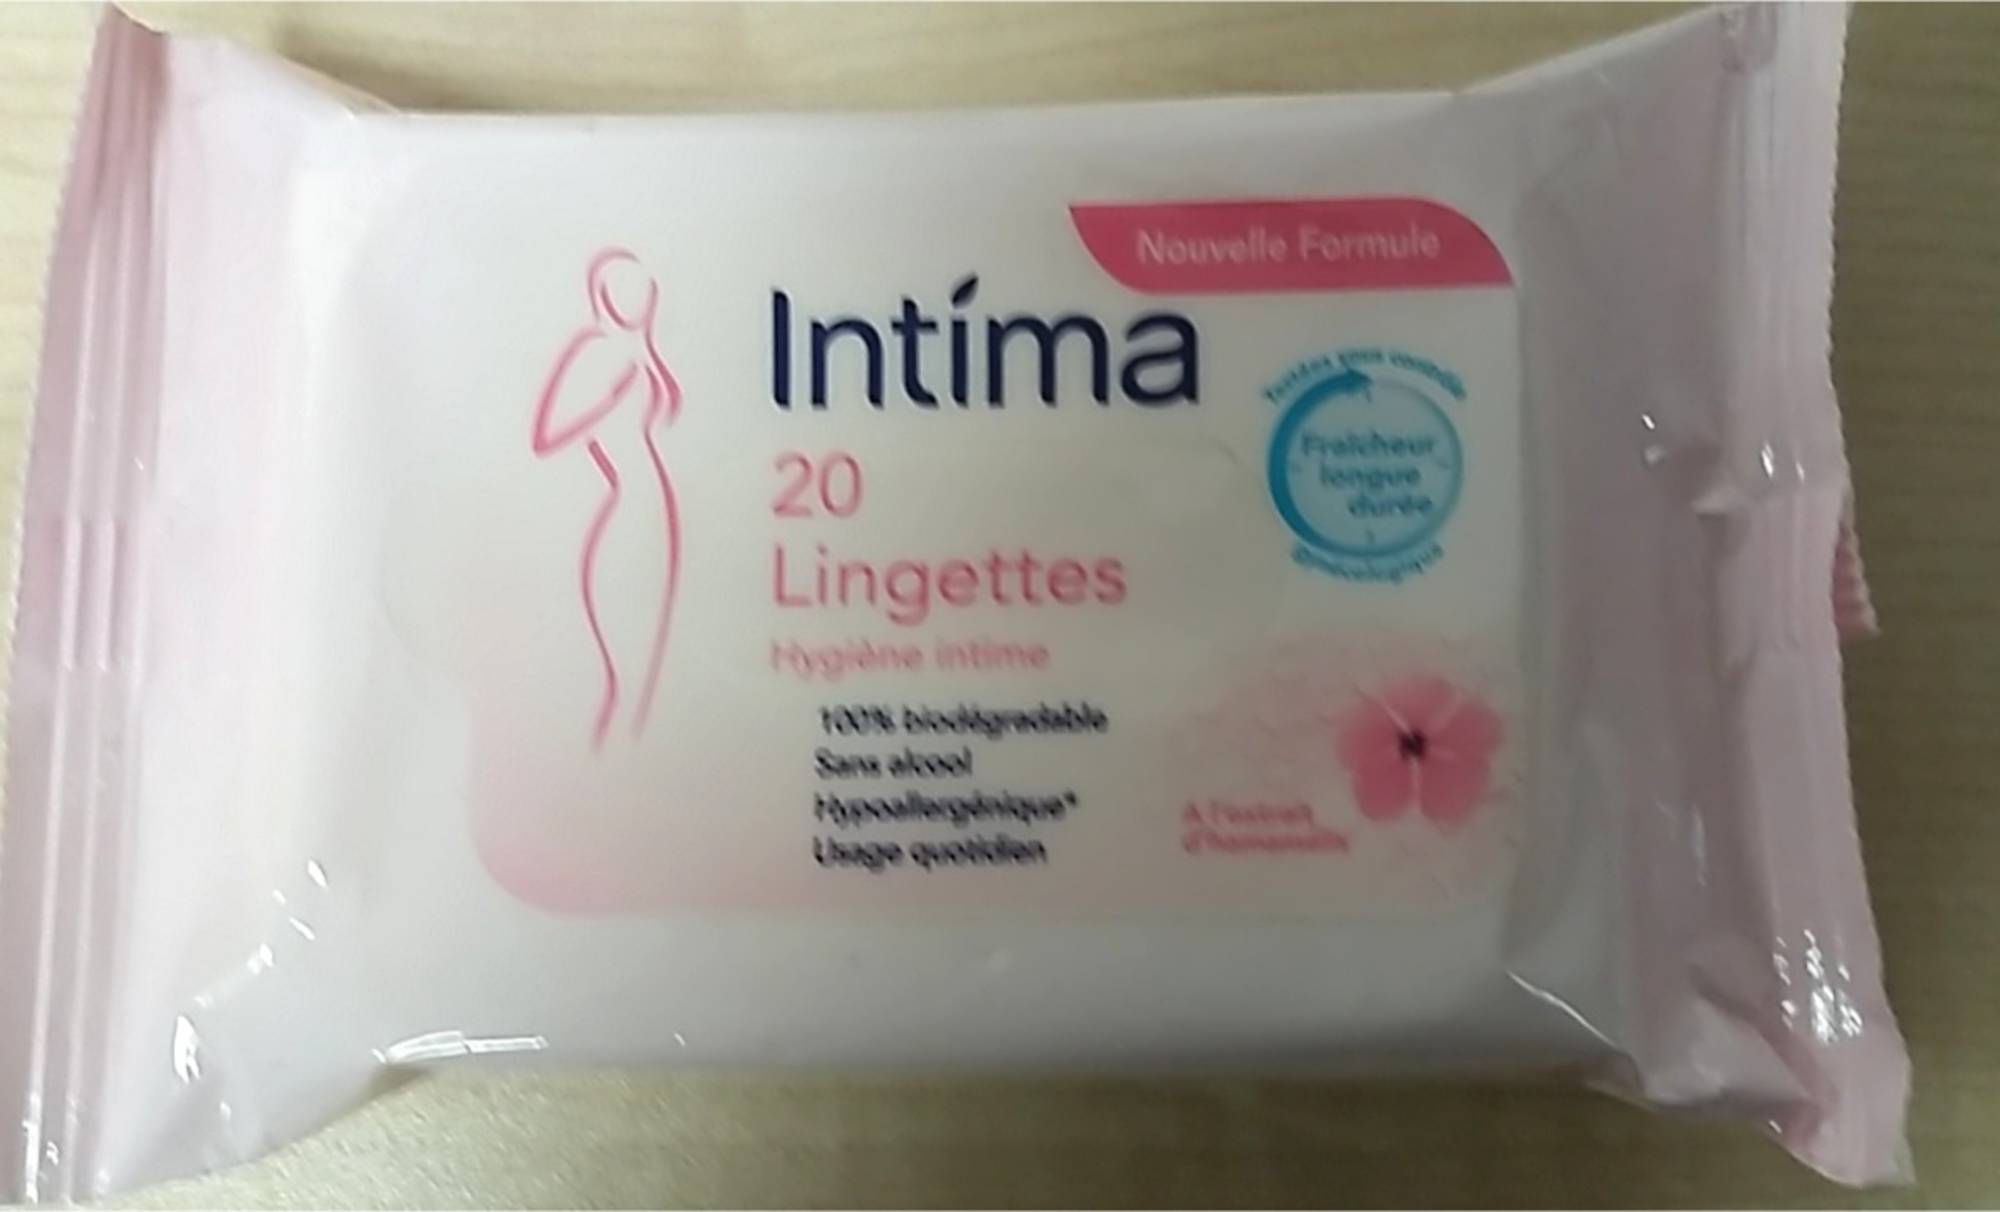 INTIMA Lingettes hygiène intime fraîcheur longue durée à l'extrait  d'hamamélis 20 lingettes pas cher 